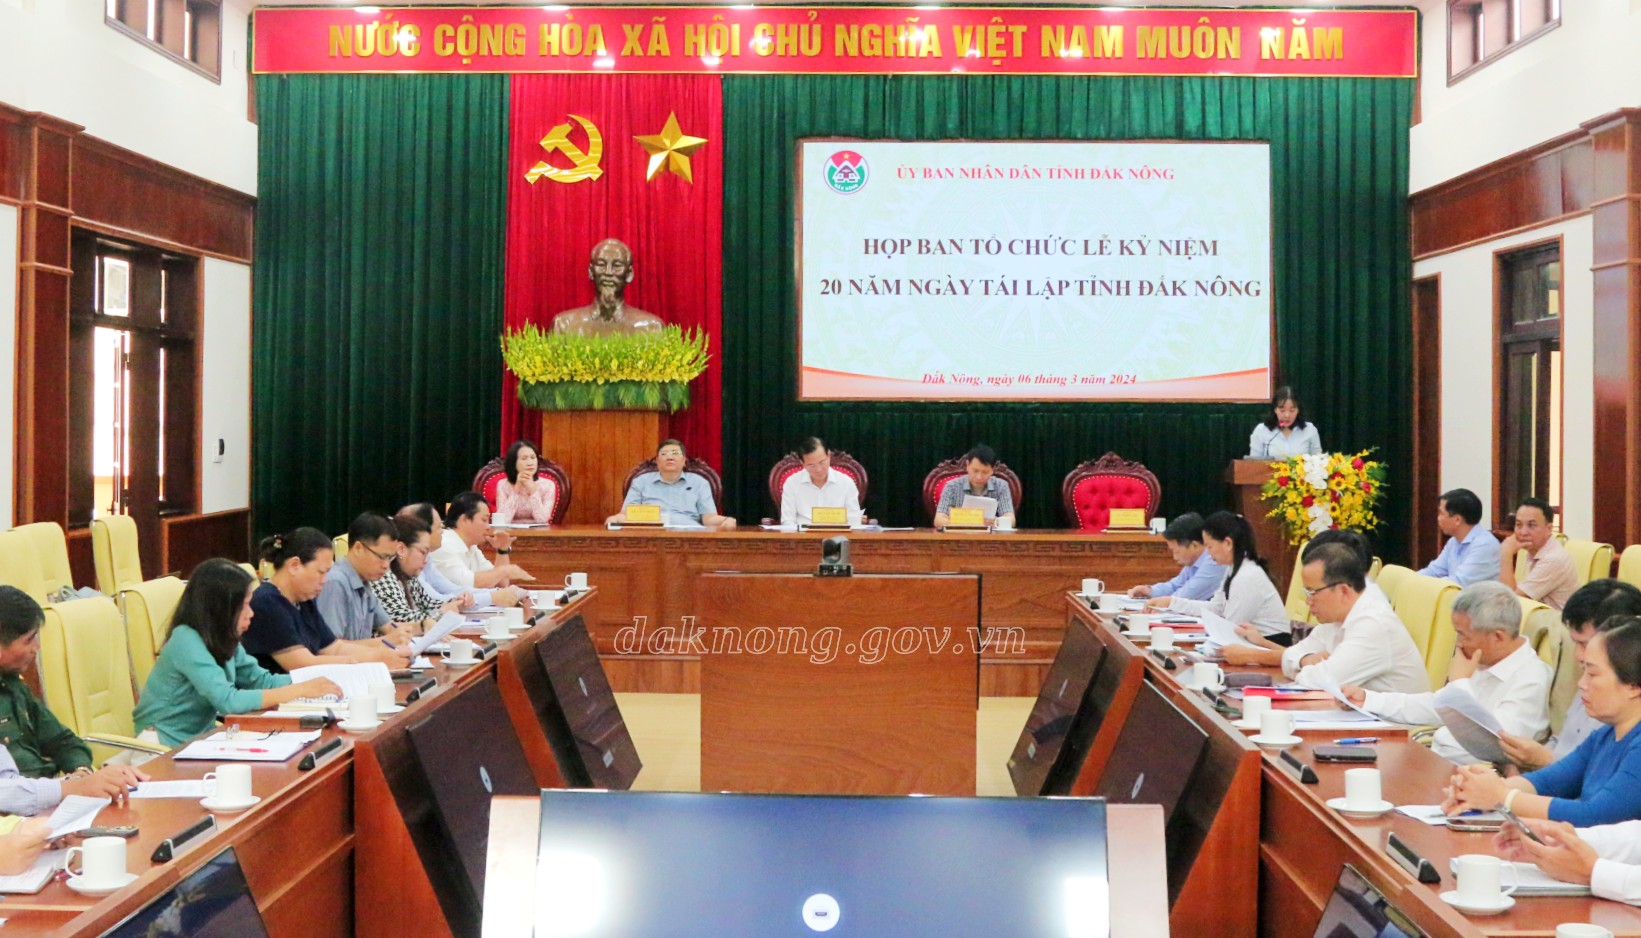 Đảm bảo công tác chuẩn bị cho Lễ kỷ niệm 20 năm ngày tái lập tỉnh Đắk Nông diễn ra đúng tiến độ, đạt yêu cầu